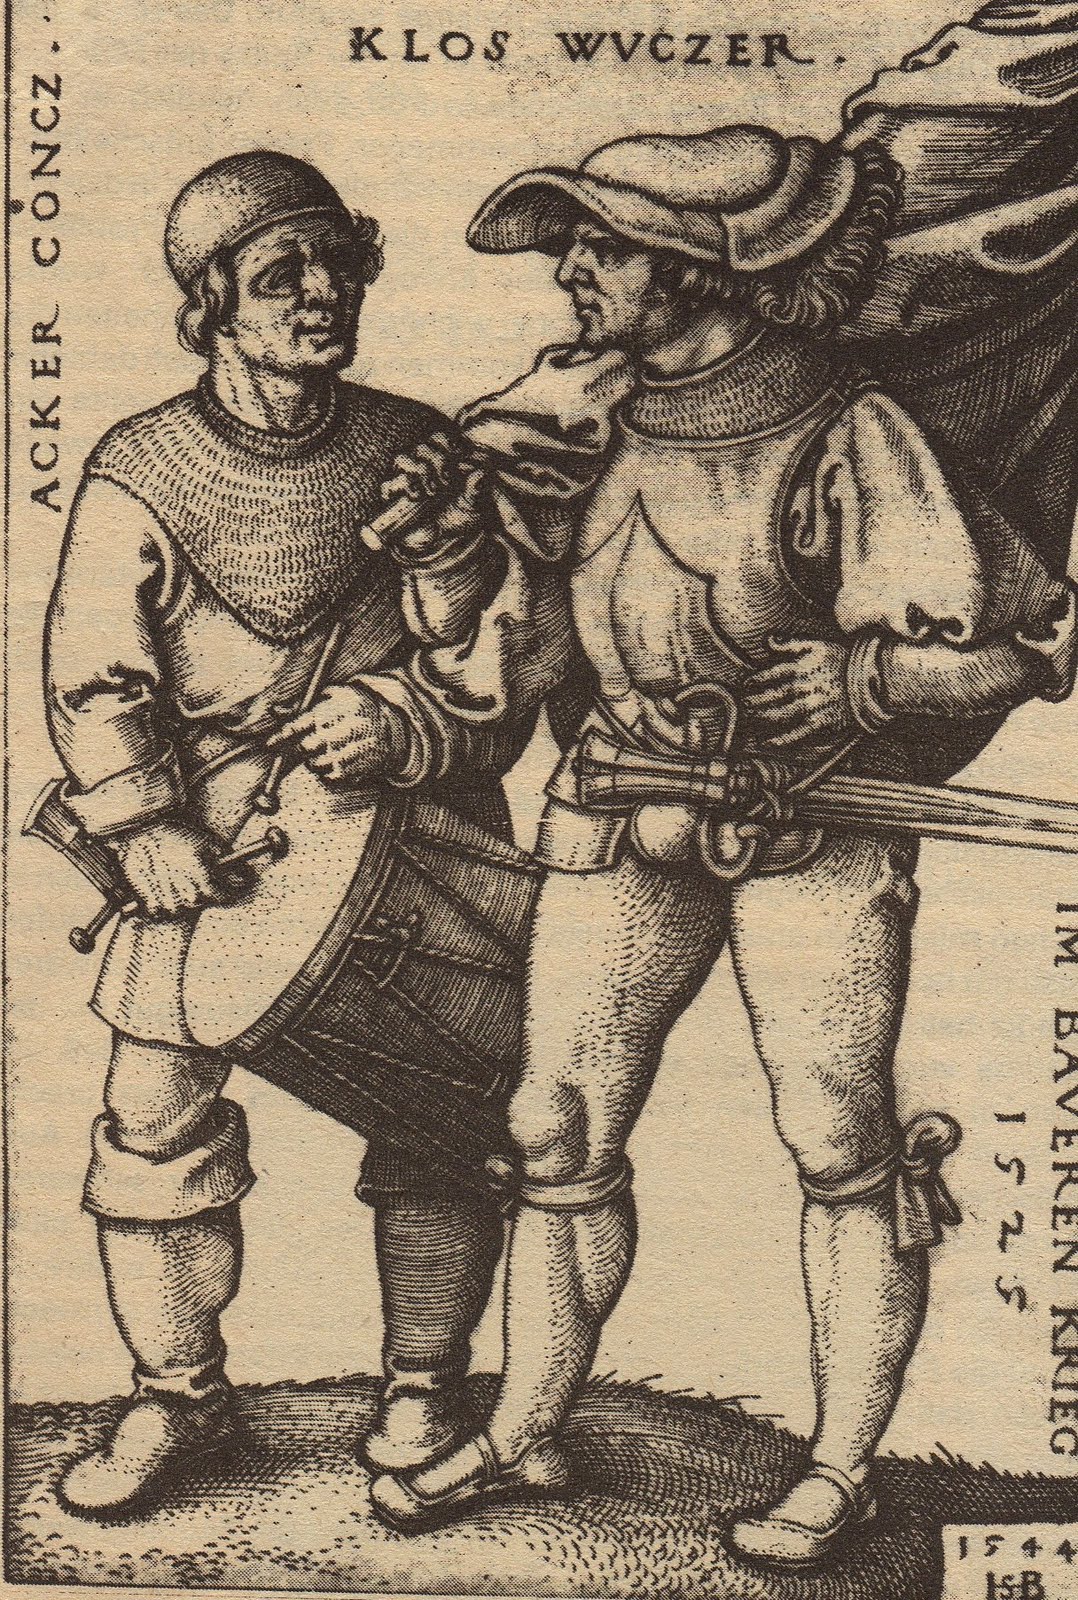 1544 gestochener Kupferstich ACKER CONCZ. KLOS WVCZER. IM BAVERN KRIEG 1525 von Sebald Beham